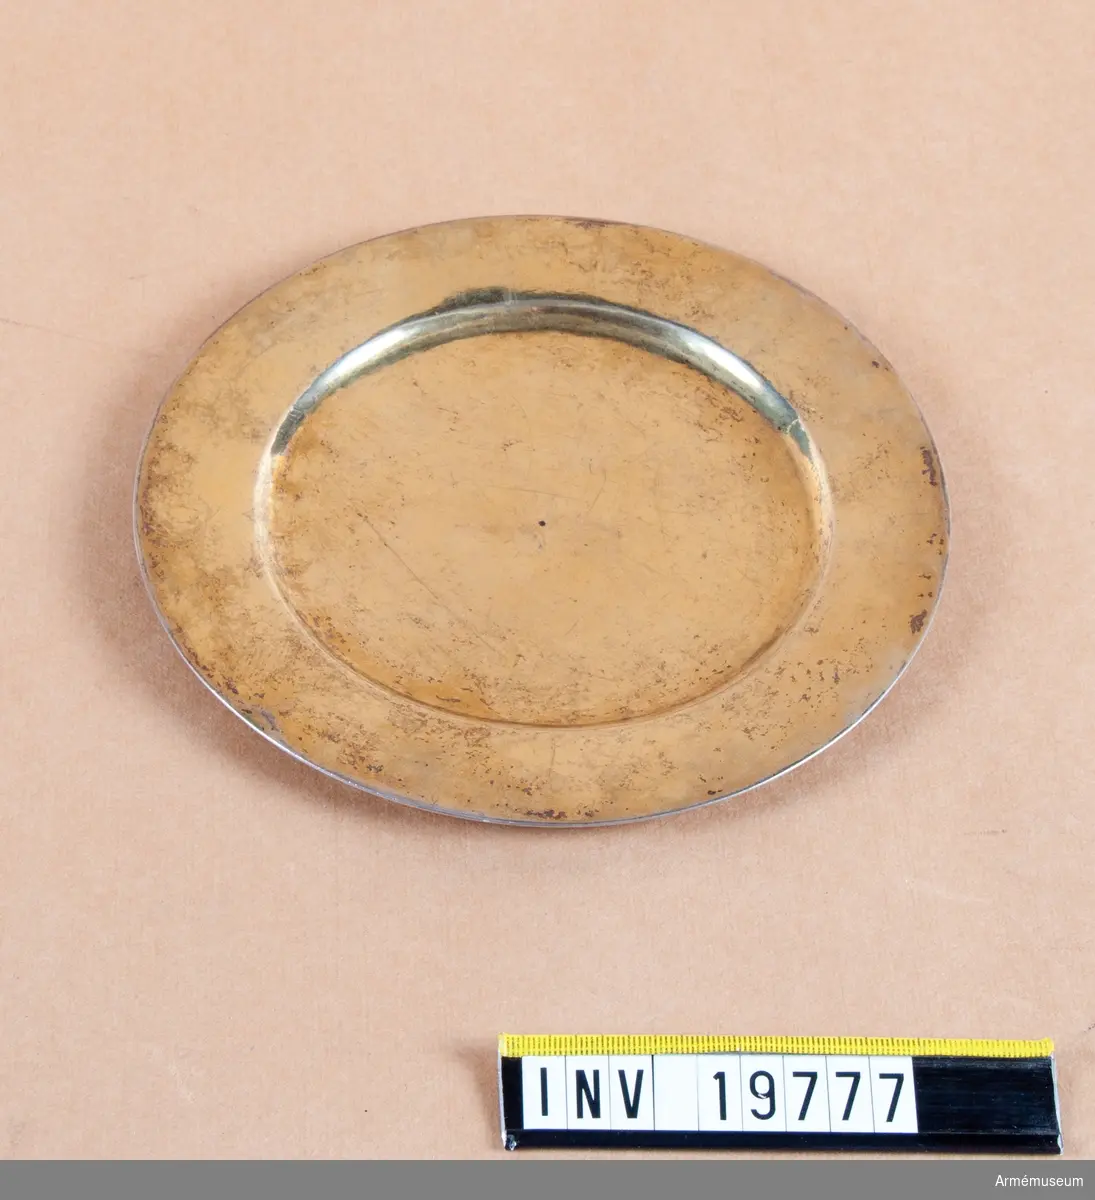 Förgylld paten. På undersidan märkt med åldermannaranka, dvs. paten tillverkad före 1754. H-årsbokstaven 1696, No 2 och 14 3/4 (kan vara lod) och år 1766. I mitten en svart hålihget 1x1 diameter, två avtryck av pung på undersidan. 